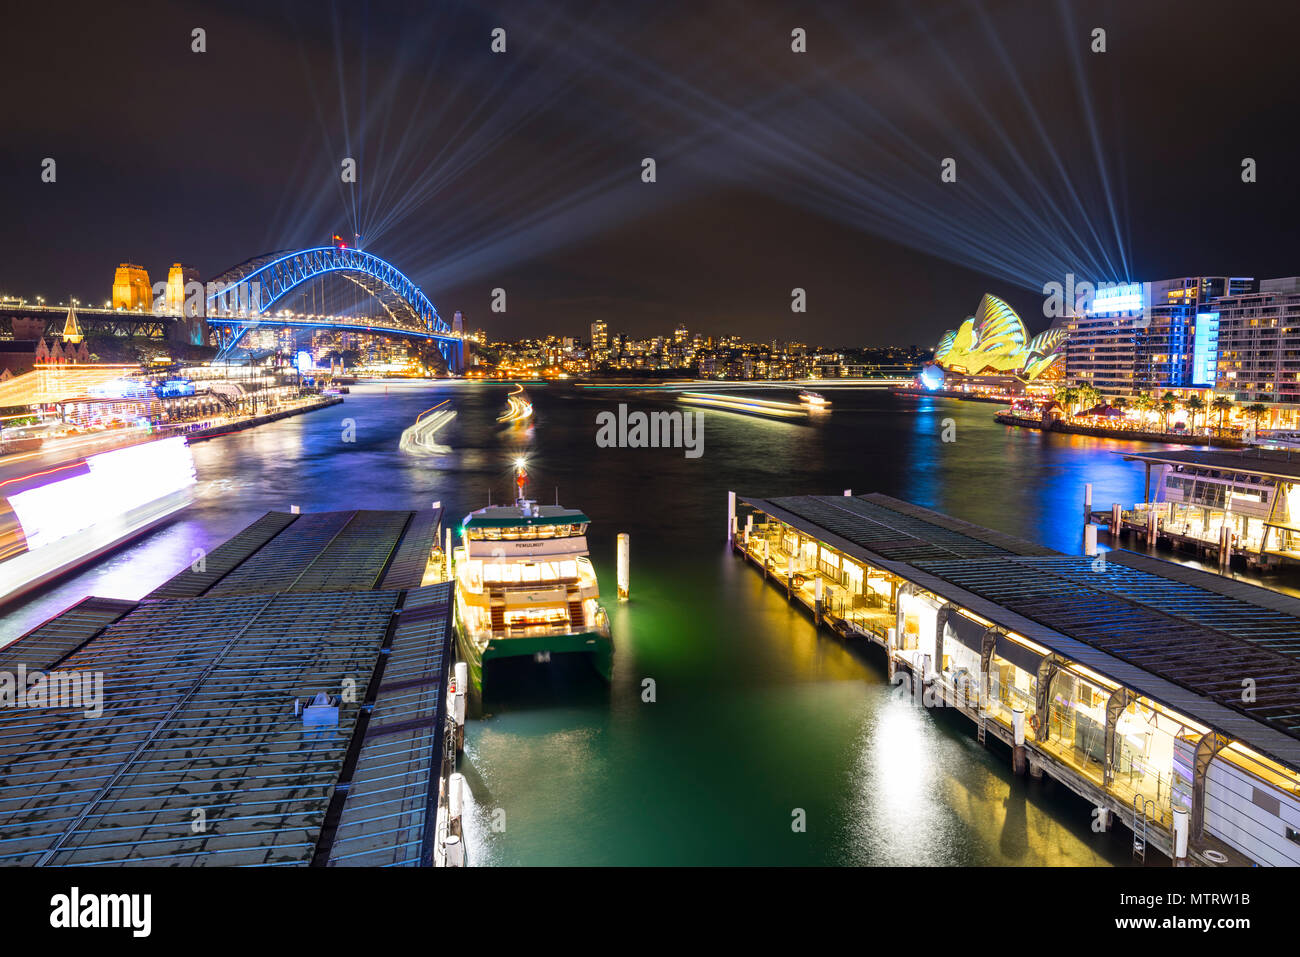 Vivid Sydney - Licht, Musik und Ideen Festival, Sydney Harbour Bridge und das Opernhaus vom Circular Quay, Australien Stockfoto